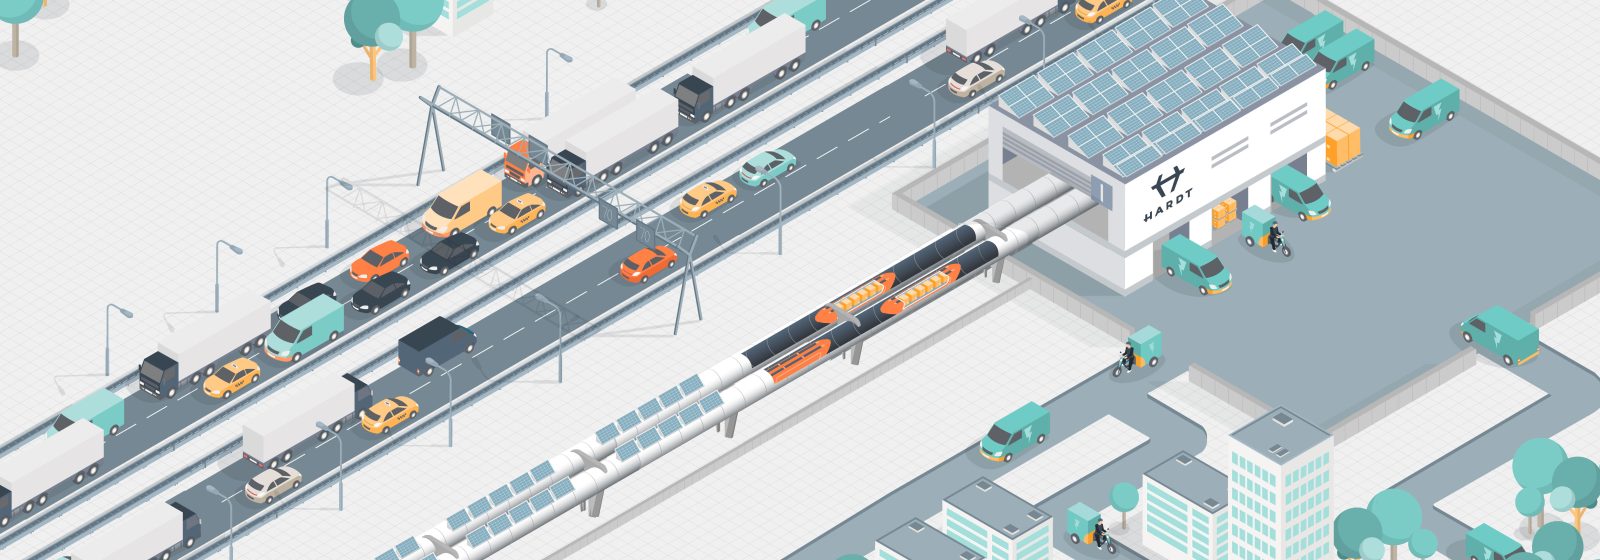 Hyperloop Hub van Hardt Hyperloop voor transport e-commercegoederen